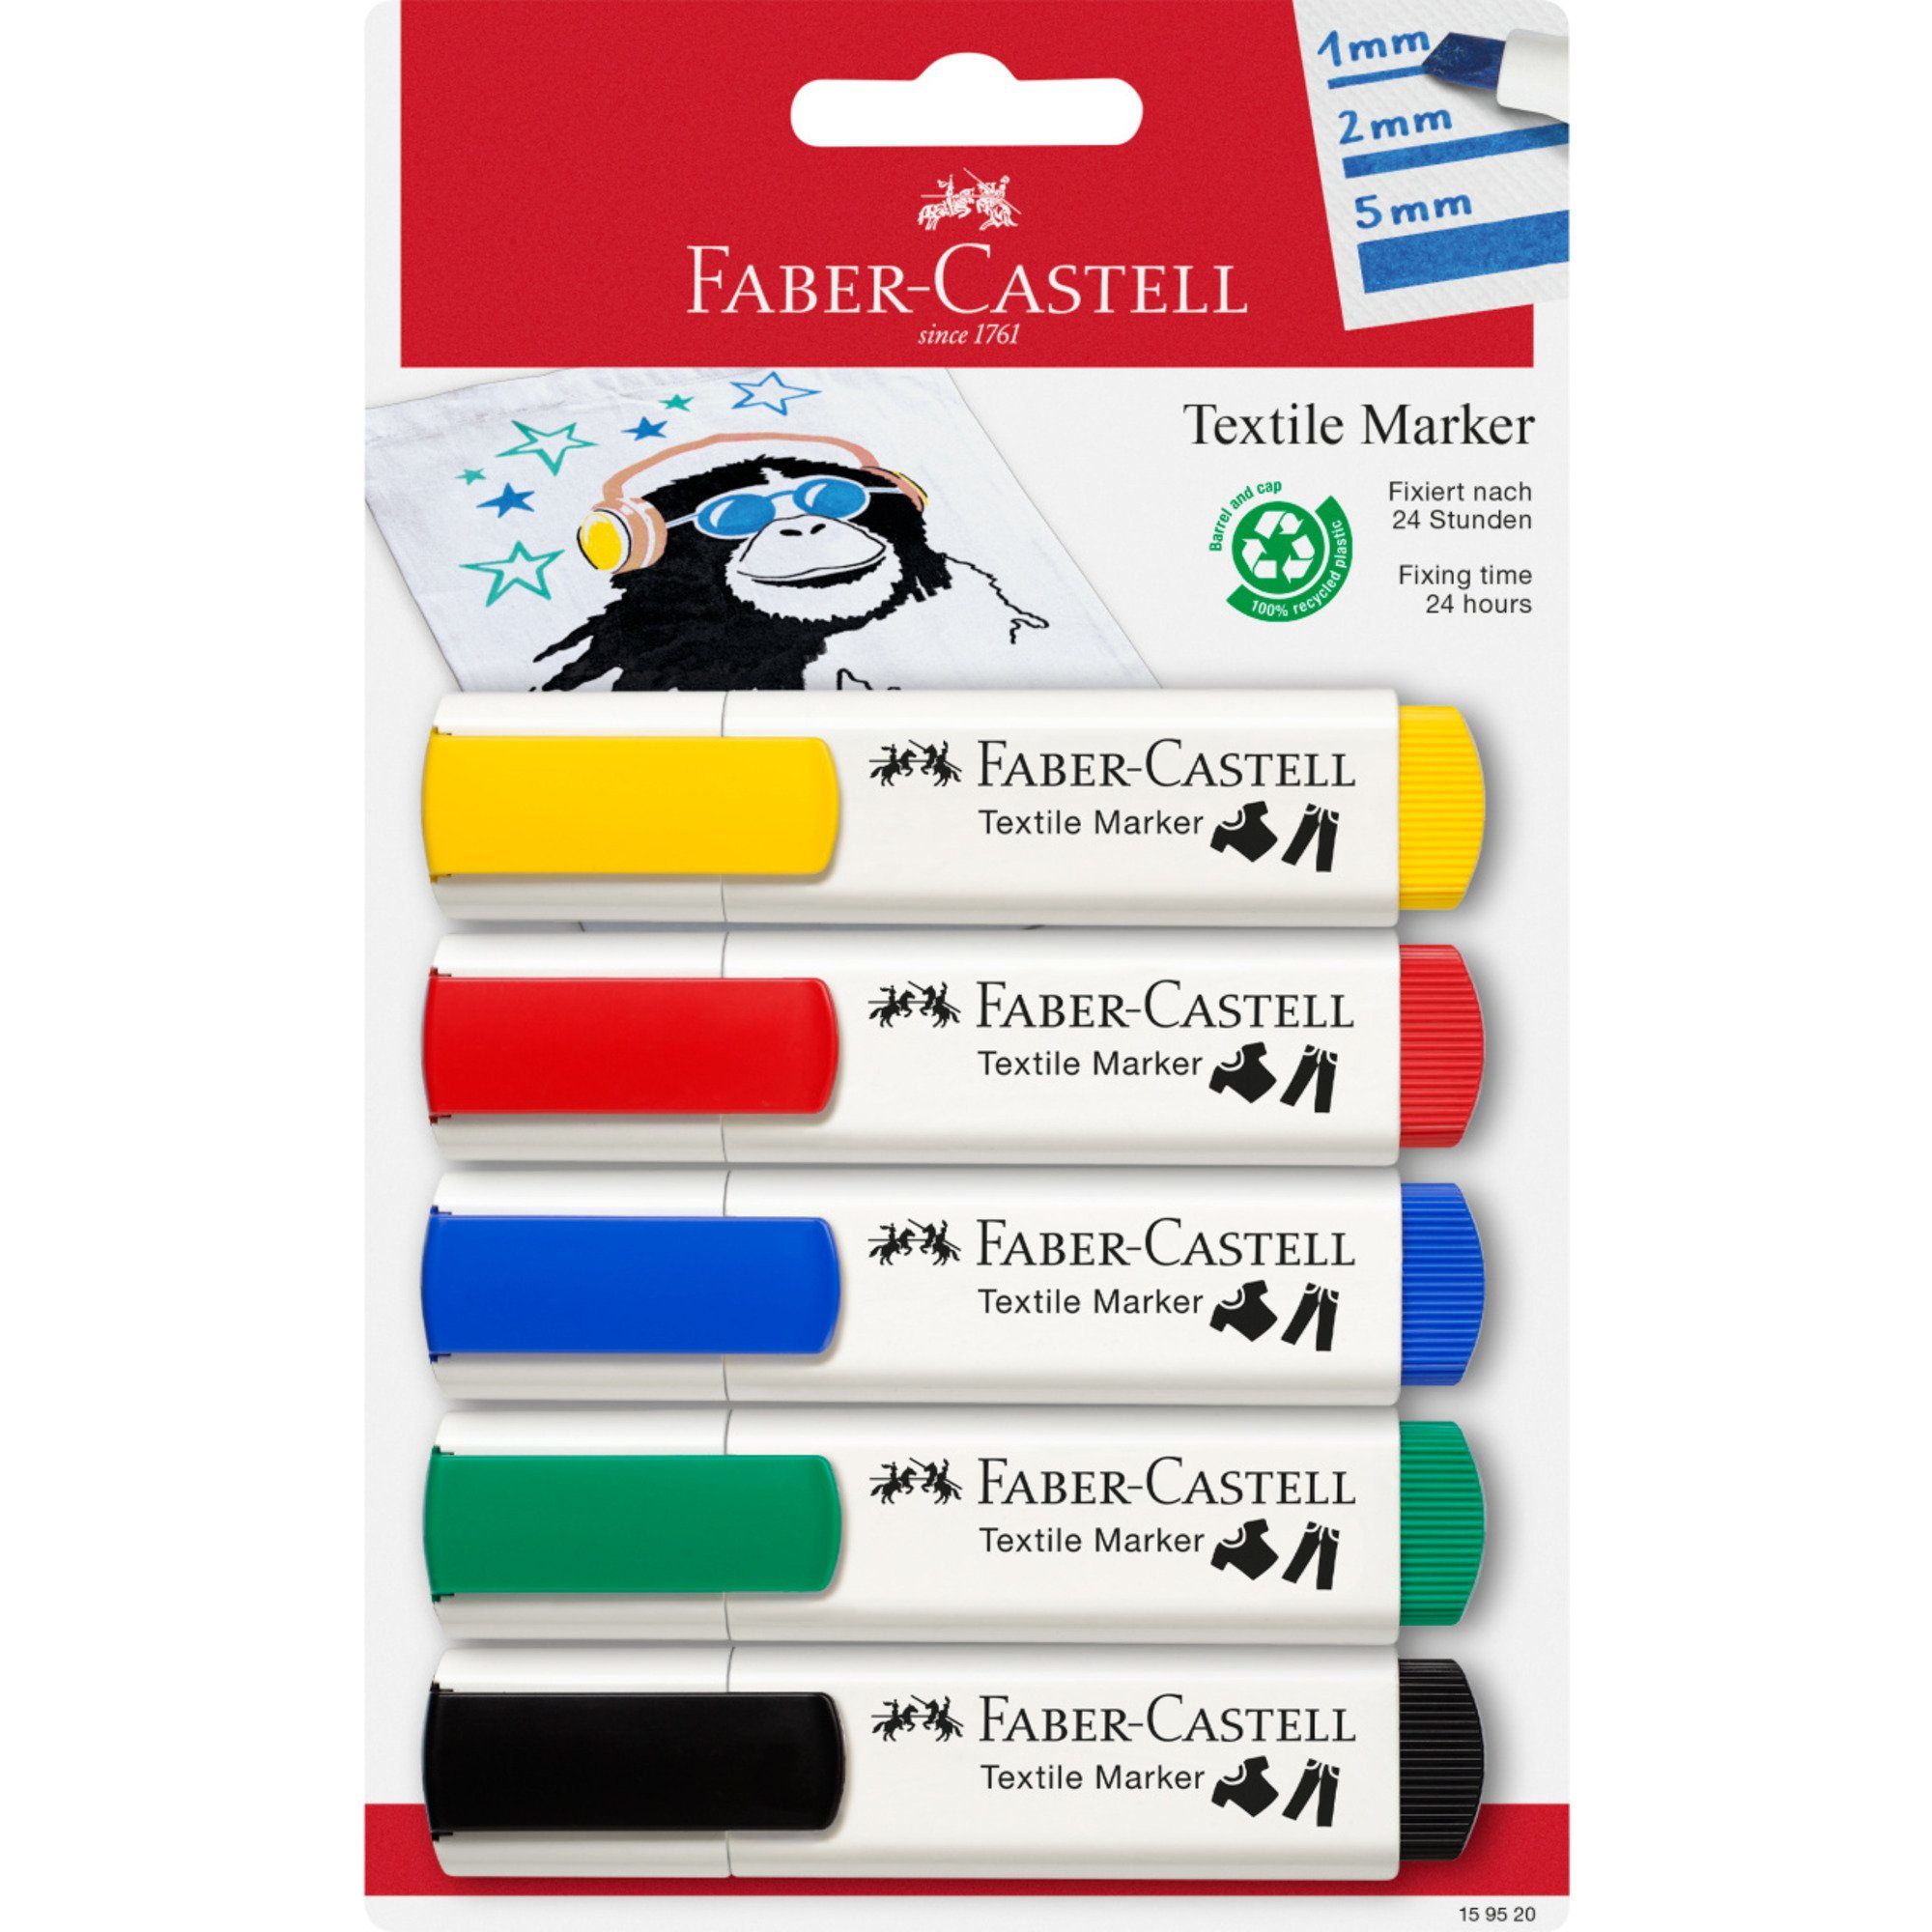 5 Faber-Castell Basisfarben, Druckkugelschreiber Textilmarker, Faber-Castell Stift